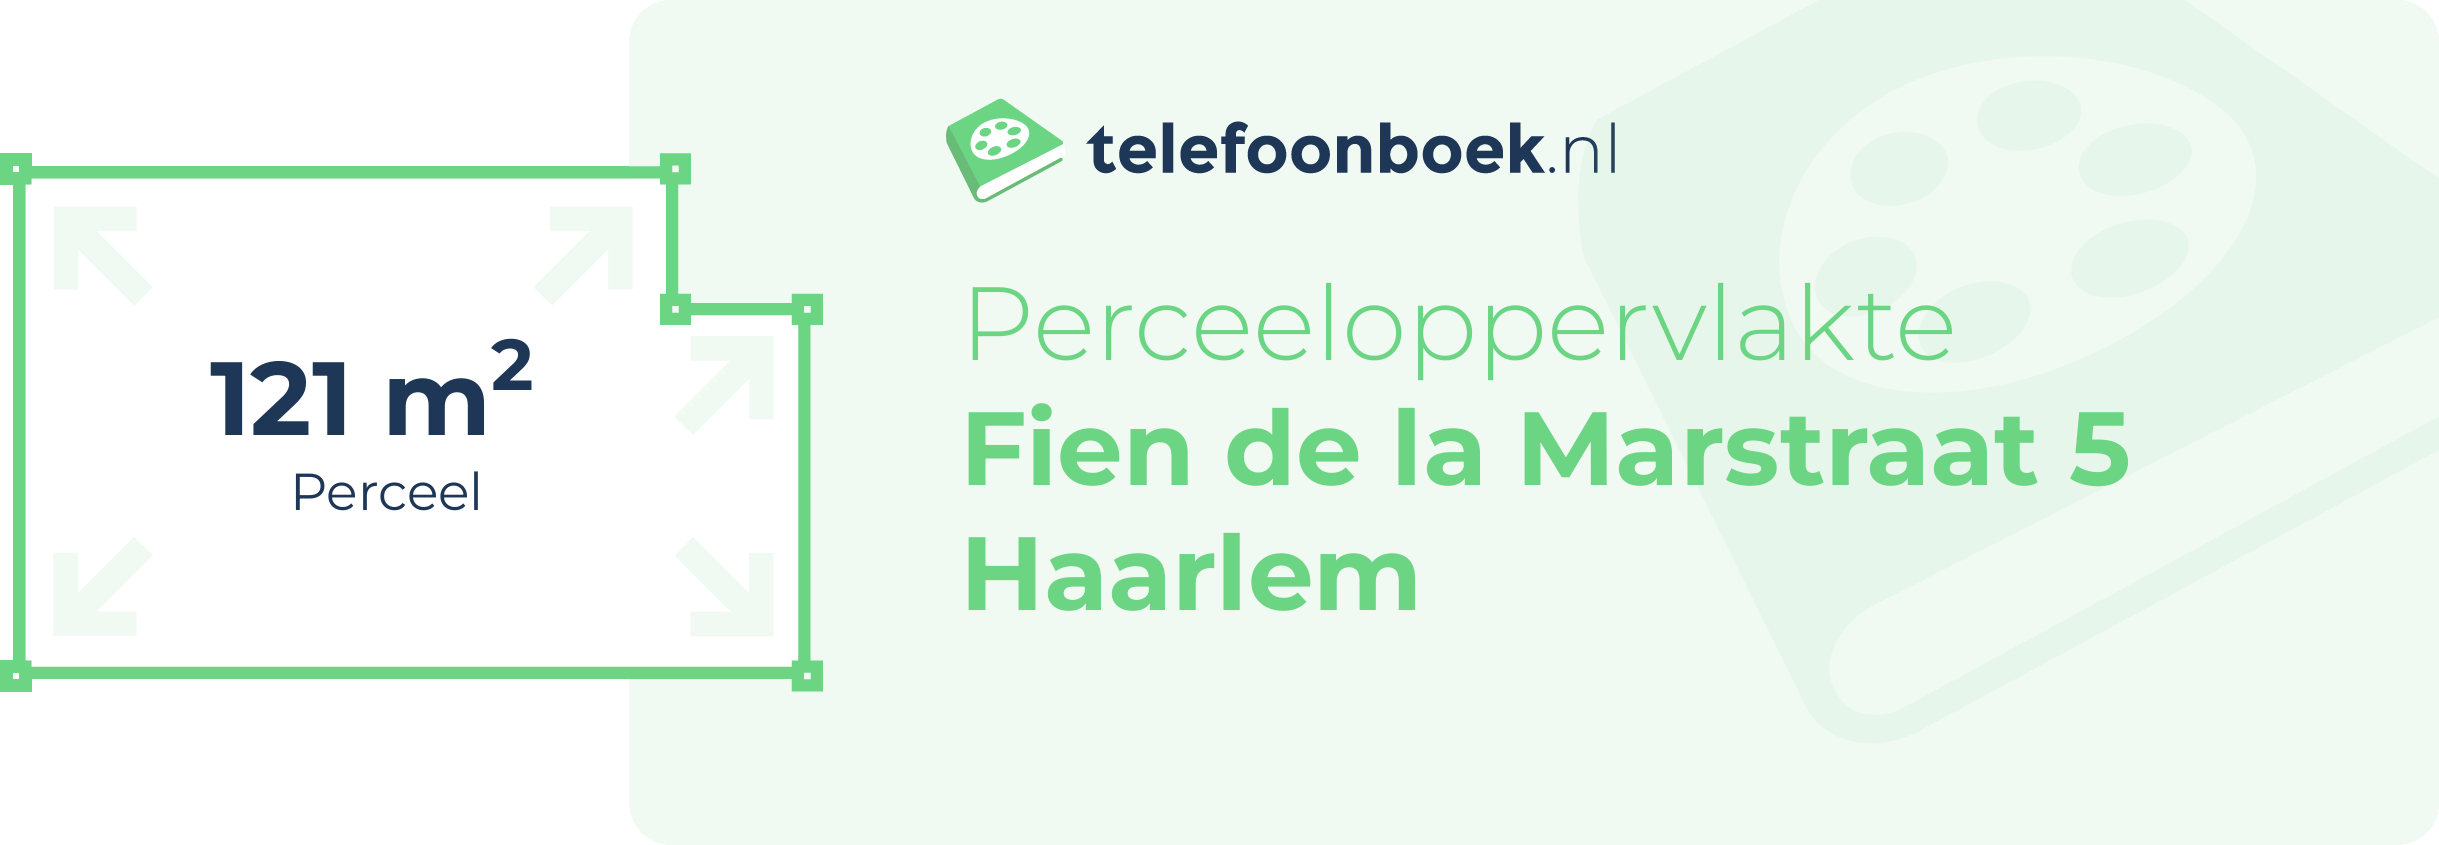 Perceeloppervlakte Fien De La Marstraat 5 Haarlem